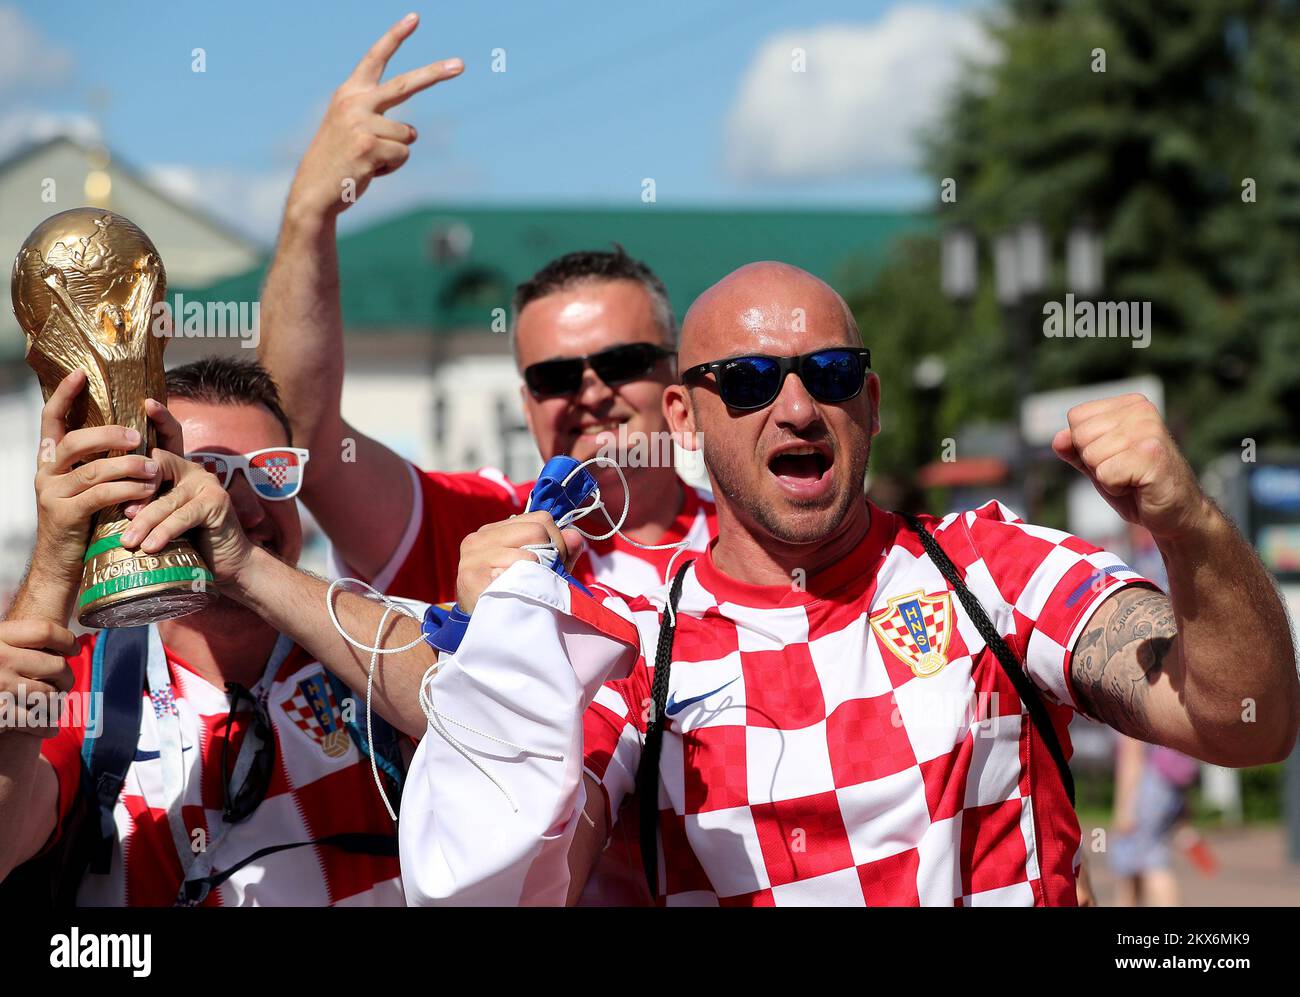 20.06.2018., Nizhny Novgorod, Rusia - Copa del Mundo 2018 en Rusia. Partidarios de Croacia en Nizhny Nogorod. Foto: Igor Kralj/PIXSELL Foto de stock